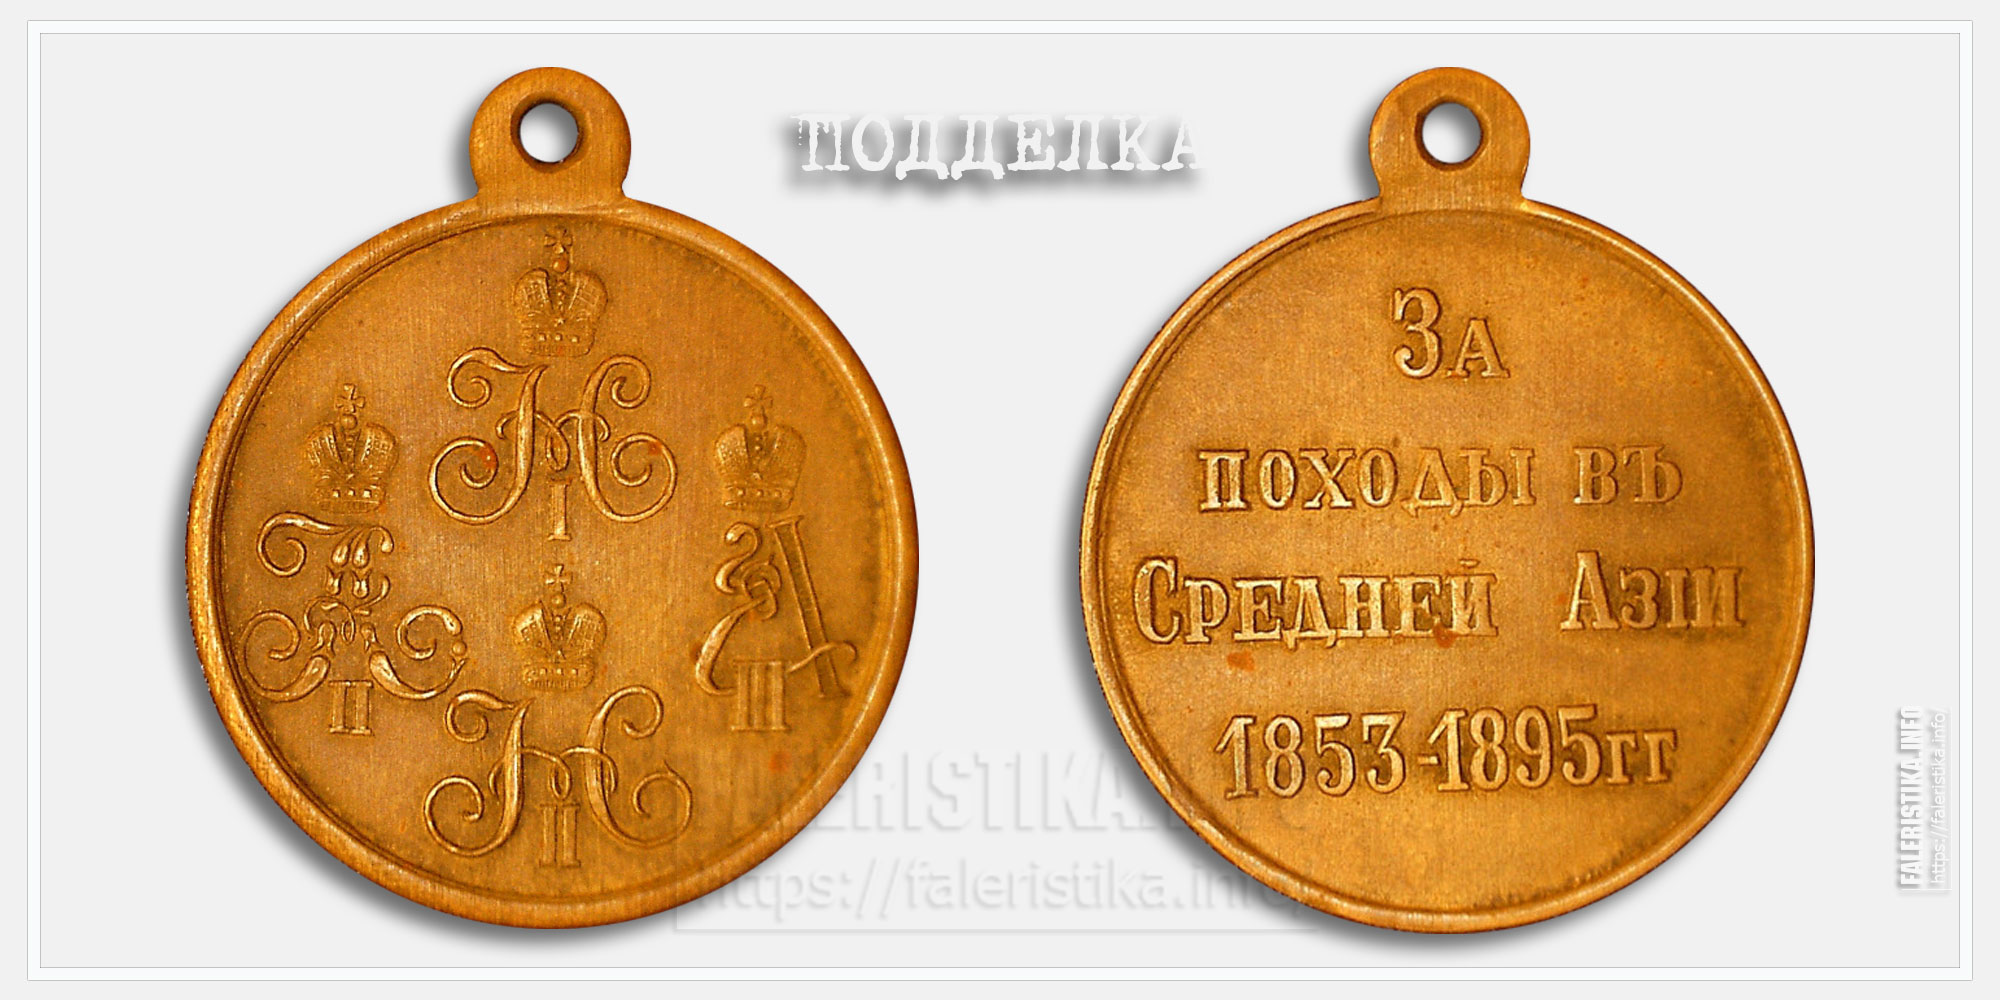 Медаль "За походы в Средней Азии 1853-1895" (копия)